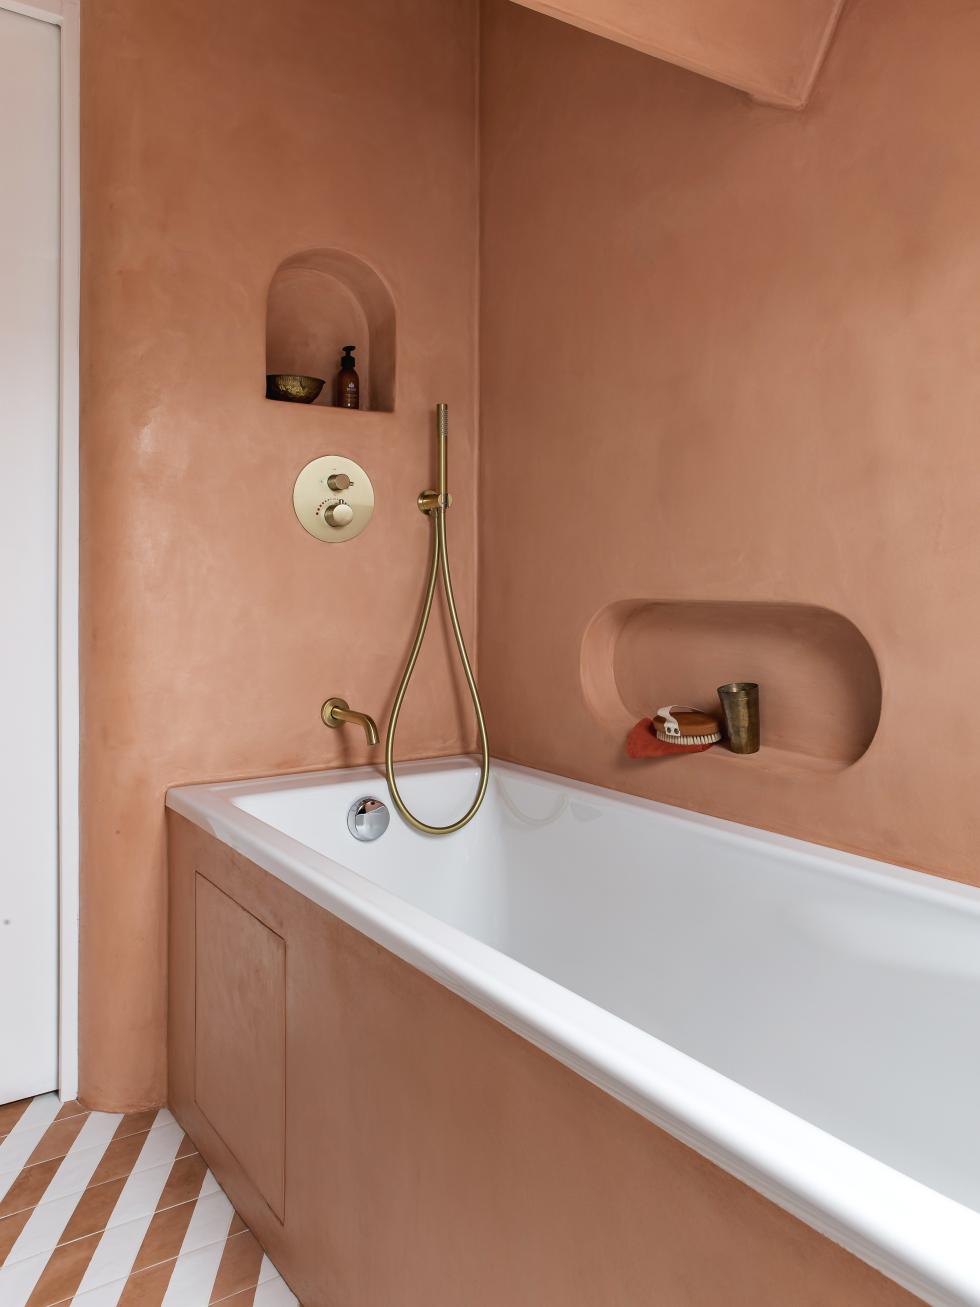 Salle de bain avec baignoire, murs en bétons ciré et robinetterie en laiton.